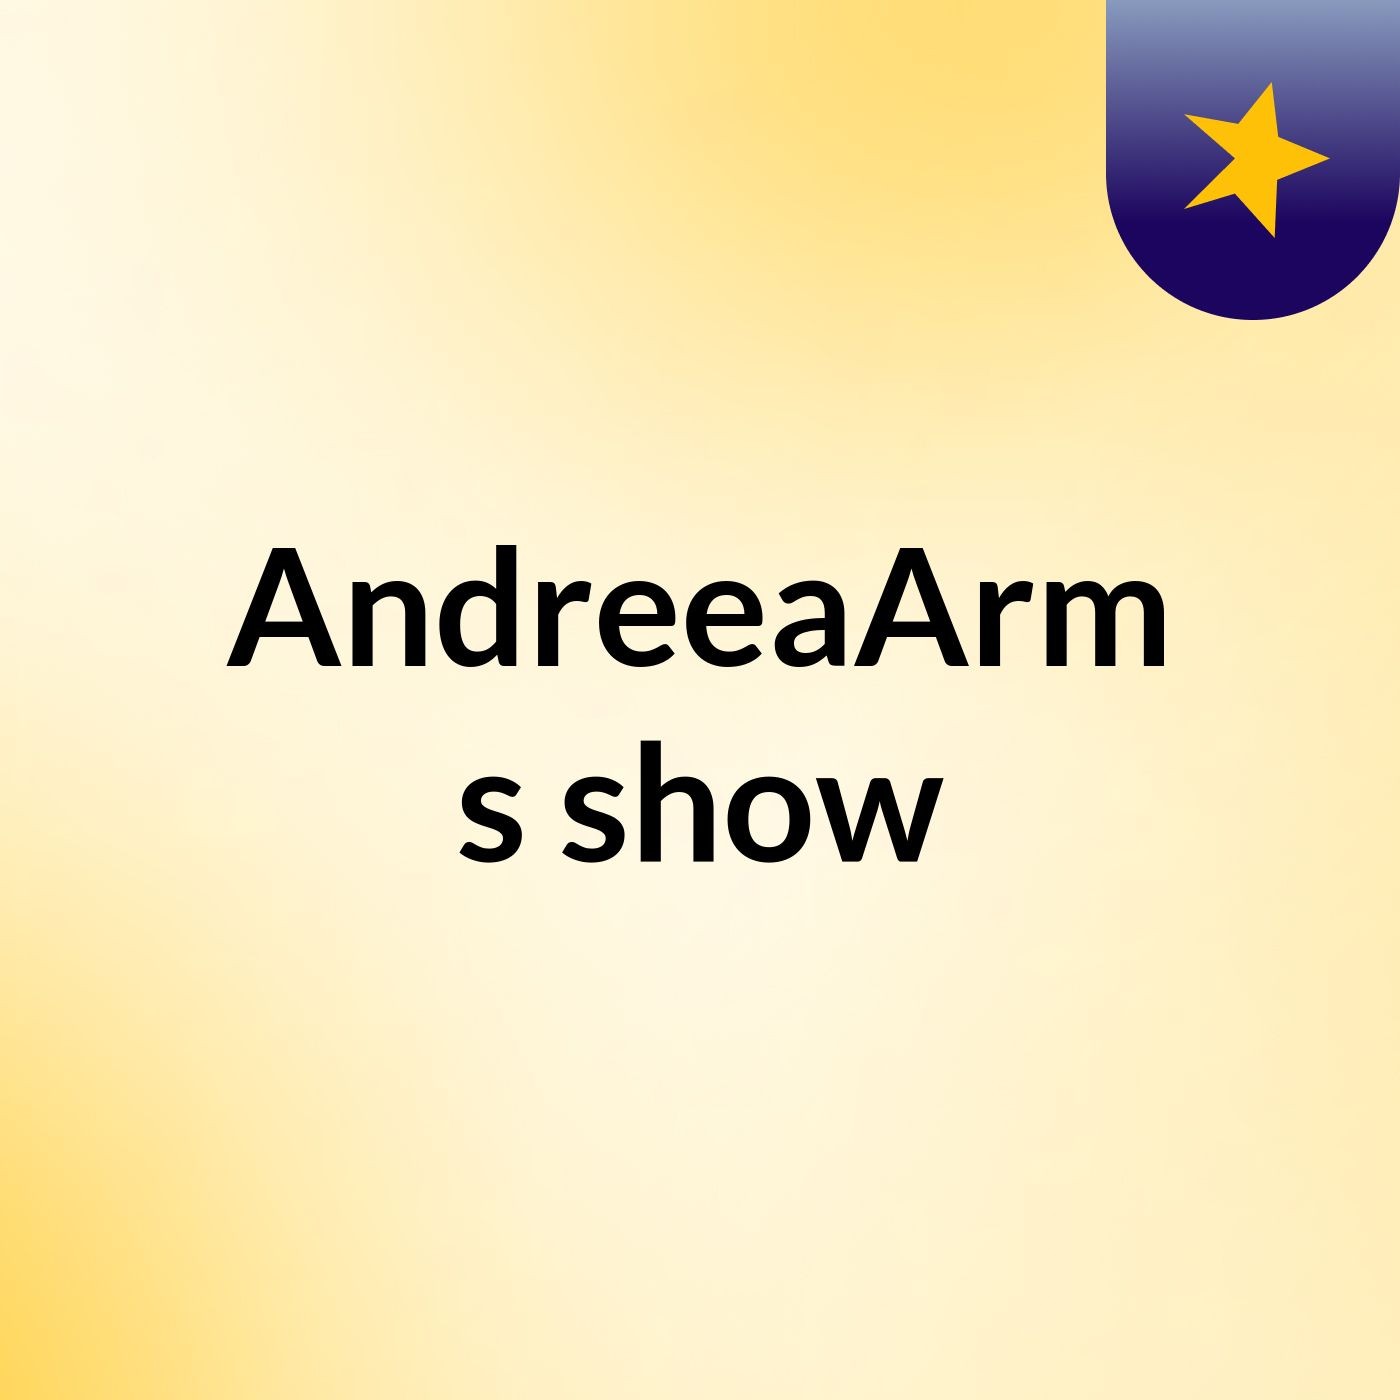 AndreeaArm's show